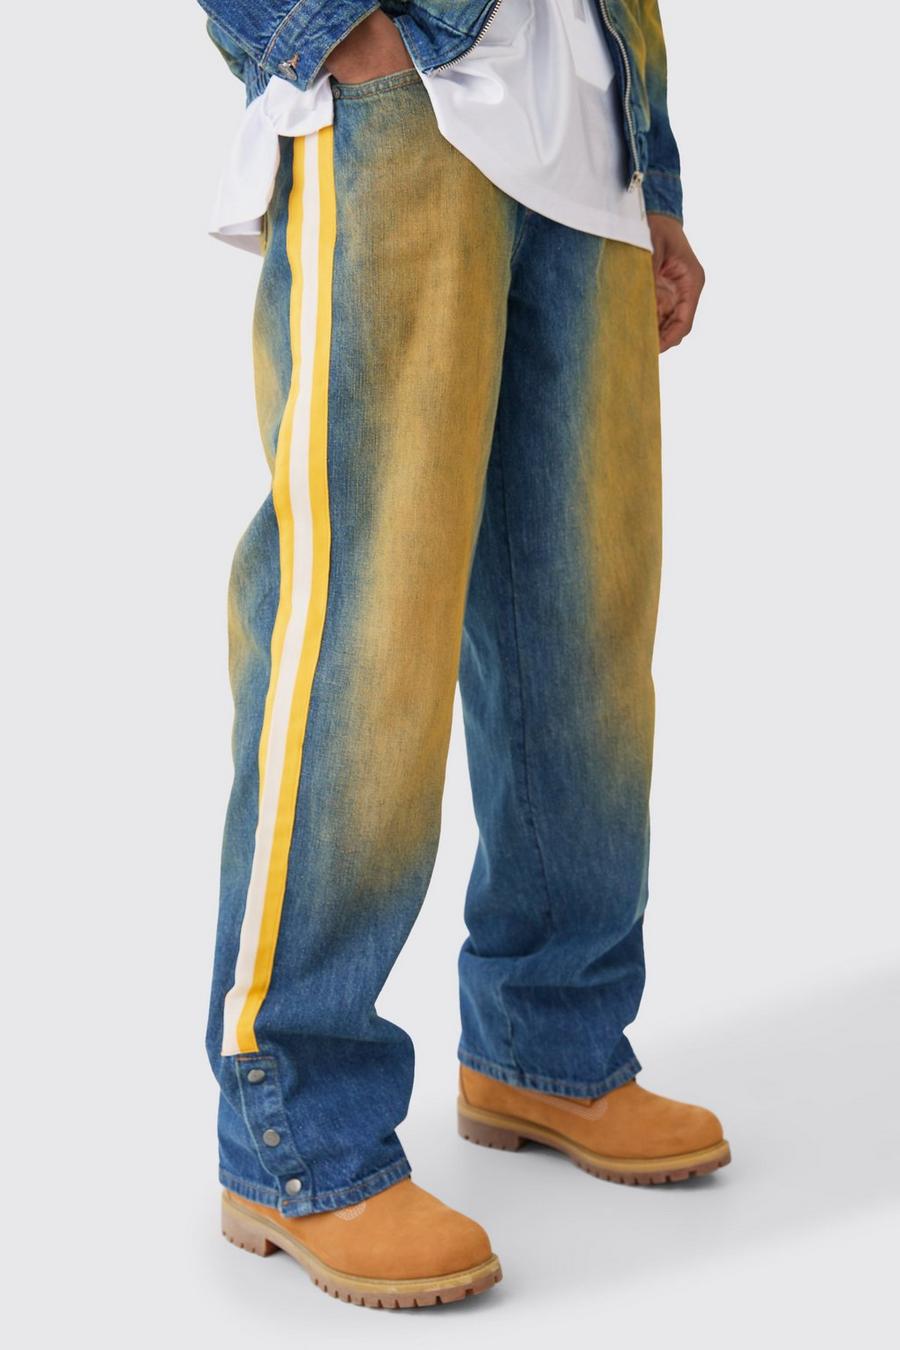 Jeans Nfl Chiefs extra comodi in denim rigido colorato con bottoni a pressione e striscia sul fondo, Antique blue image number 1